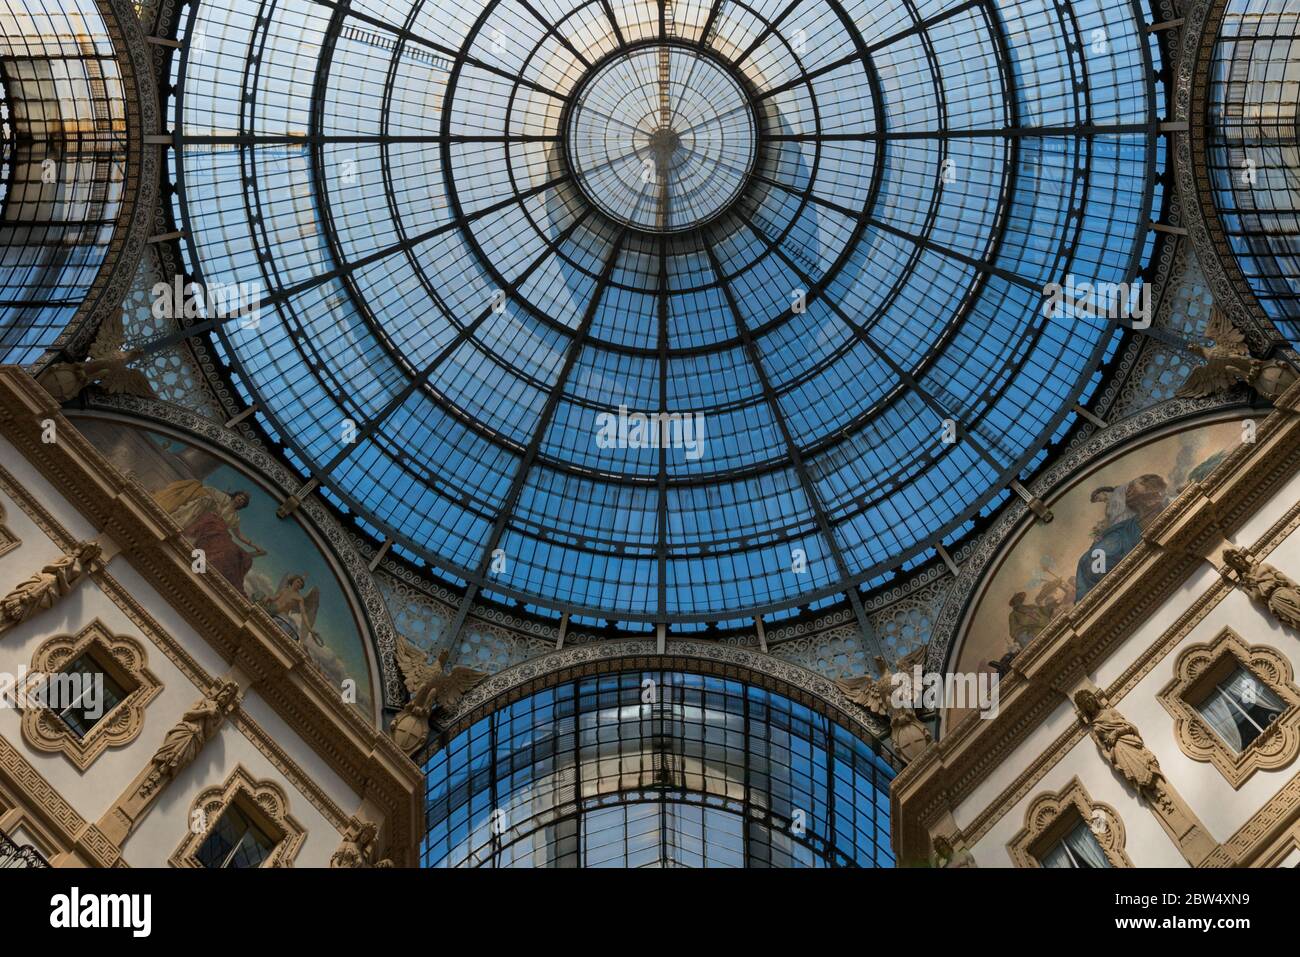 MILANO, ITALIA - 16 MARZO 2018: Immagine orizzontale del tetto in ferro e vetro della Galleria Vittorio Emanuele II, situata a Milano Foto Stock